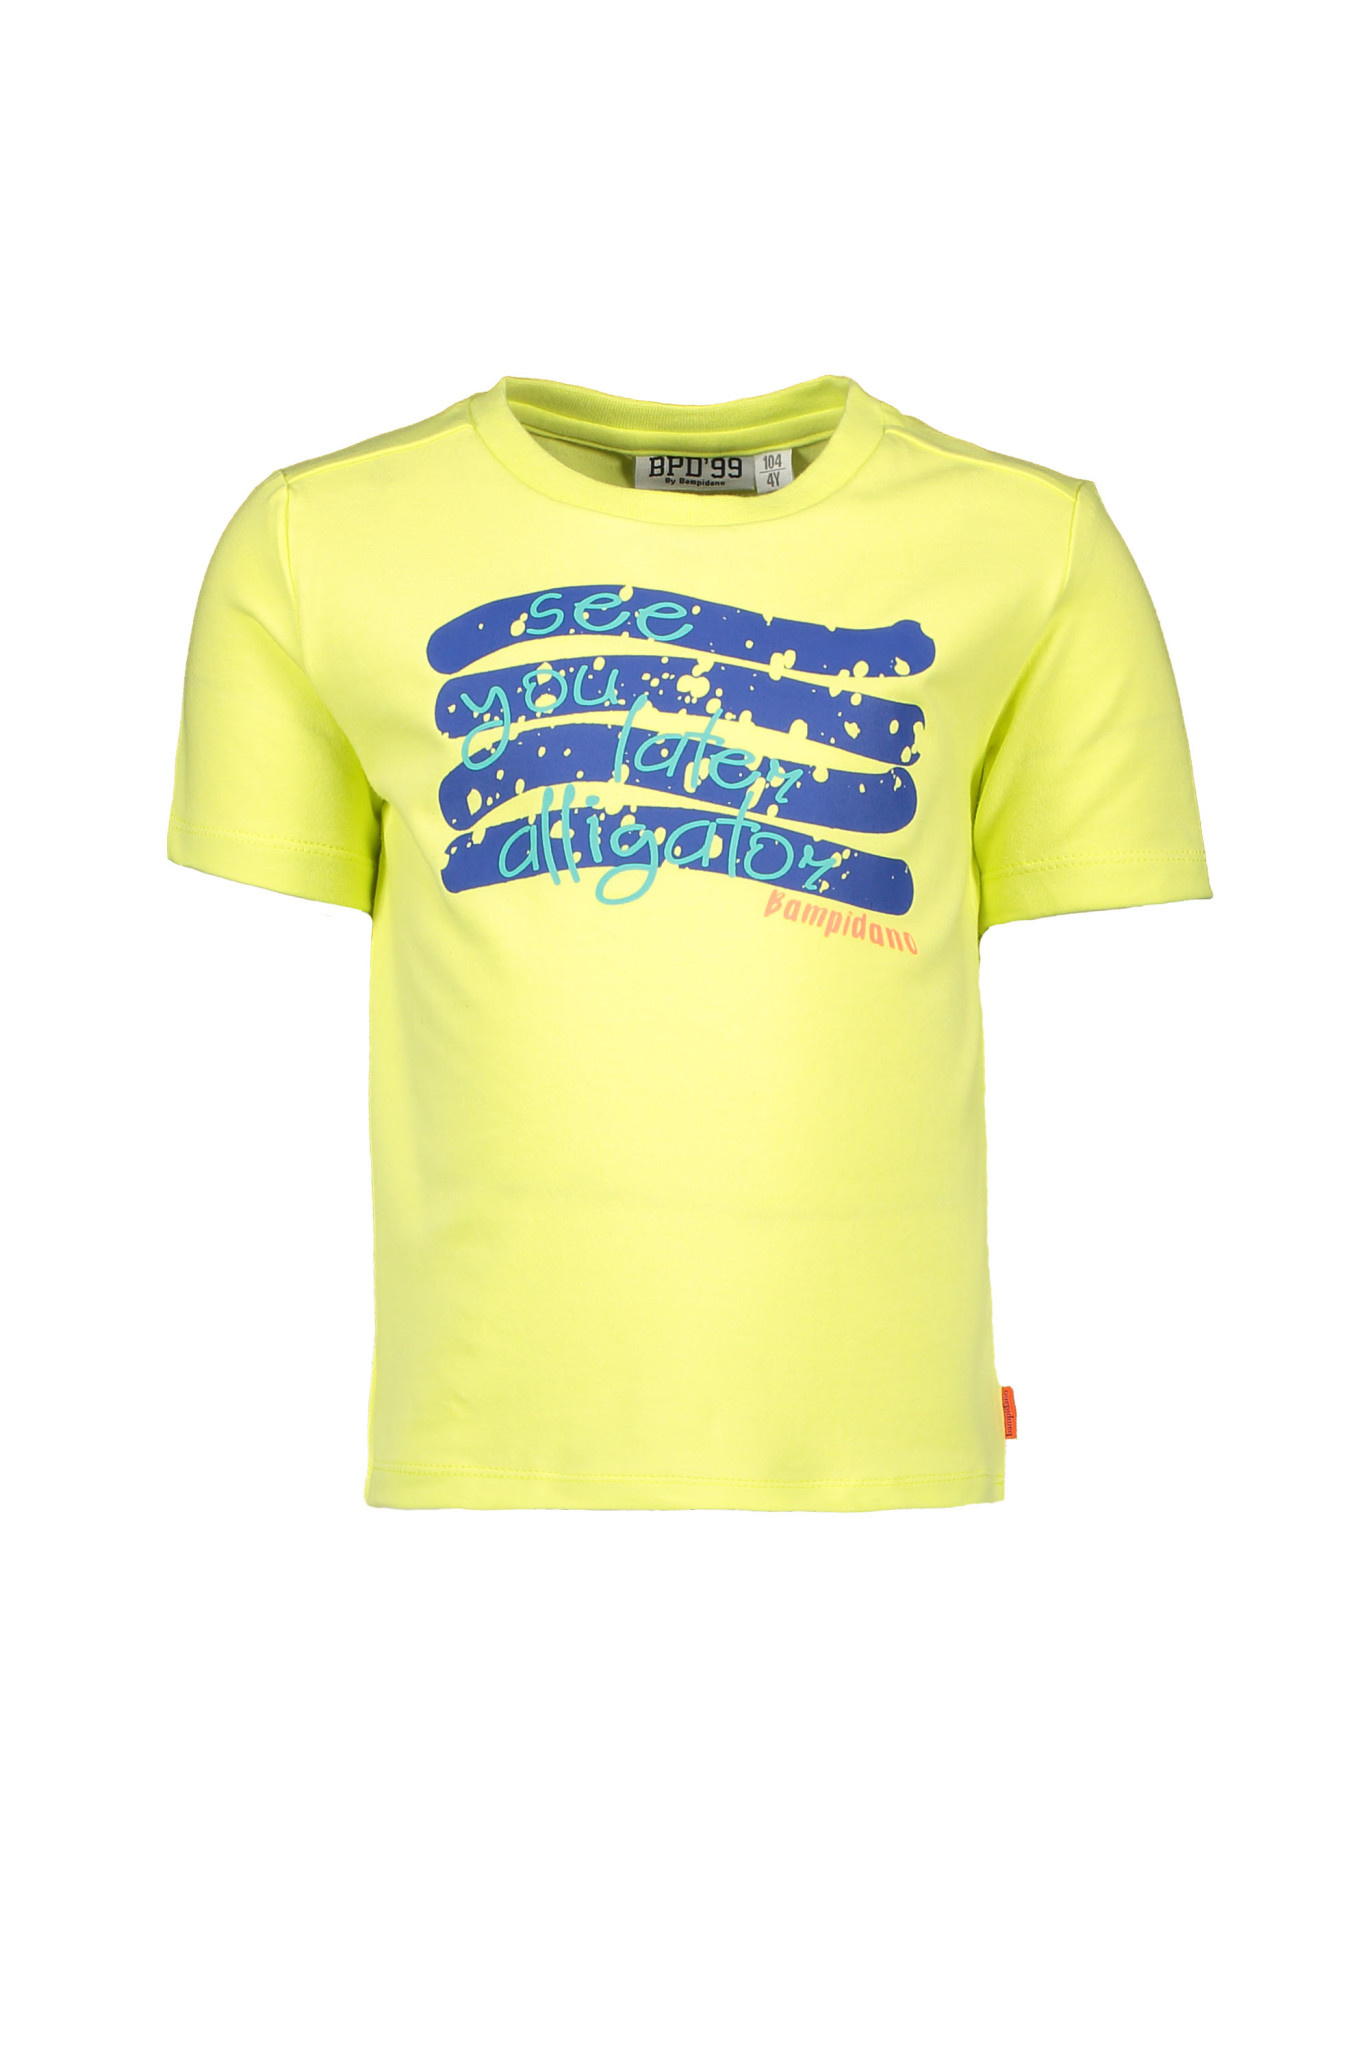 Enzo Cactus Shirt - Lime